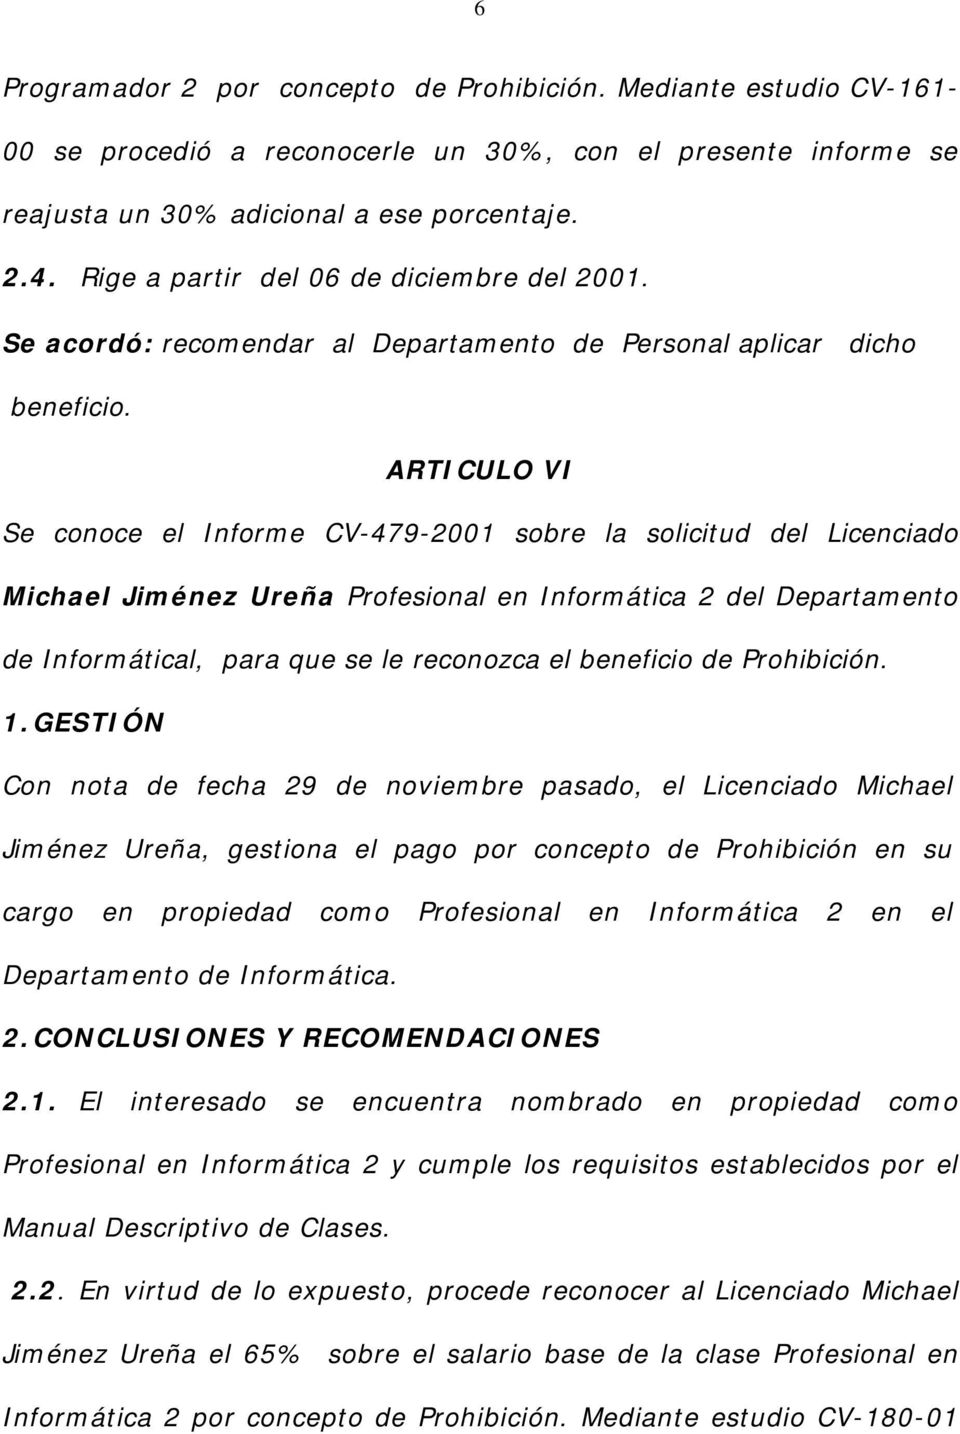 ARTICULO VI Se conoce el Informe CV-479-2001 sobre la solicitud del Licenciado Michael Jiménez Ureña Profesional en Informática 2 del Departamento de Informátical, para que se le reconozca el